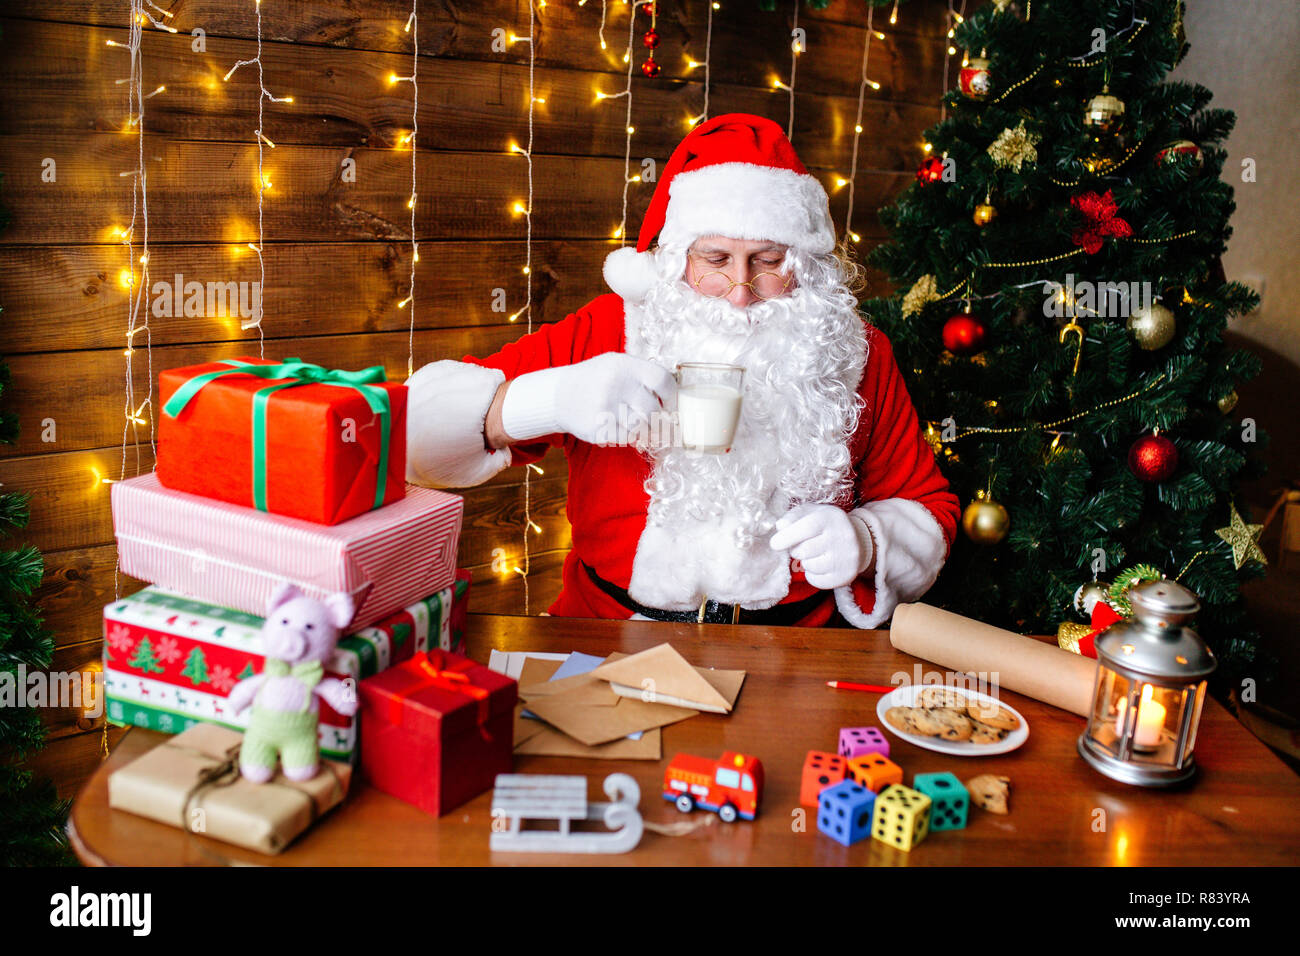 Buon Natale Per Bambini.Buon Natale E Buone Feste Santa Clause E La Preparazione Di Regali Per Bambini Per Natale Alla Scrivania A Casa Foto Stock Alamy